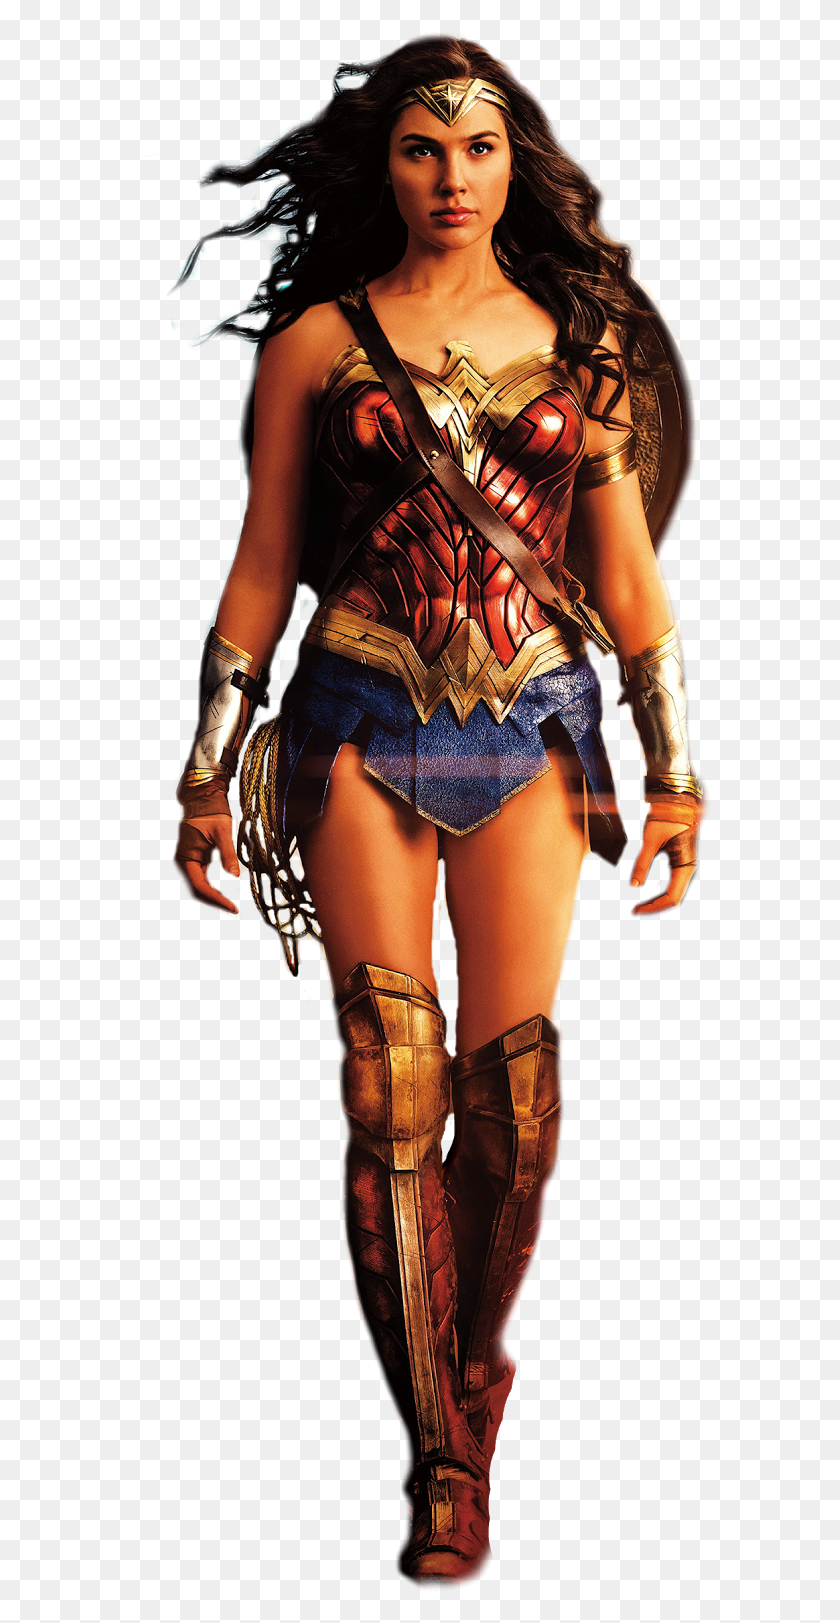 584x1563 La Mujer Maravilla Mujer Superhéroe La Mujer Maravilla Fondo De Pantalla Para Iphone, Disfraz, Ropa, Vestimenta Hd Png Descargar